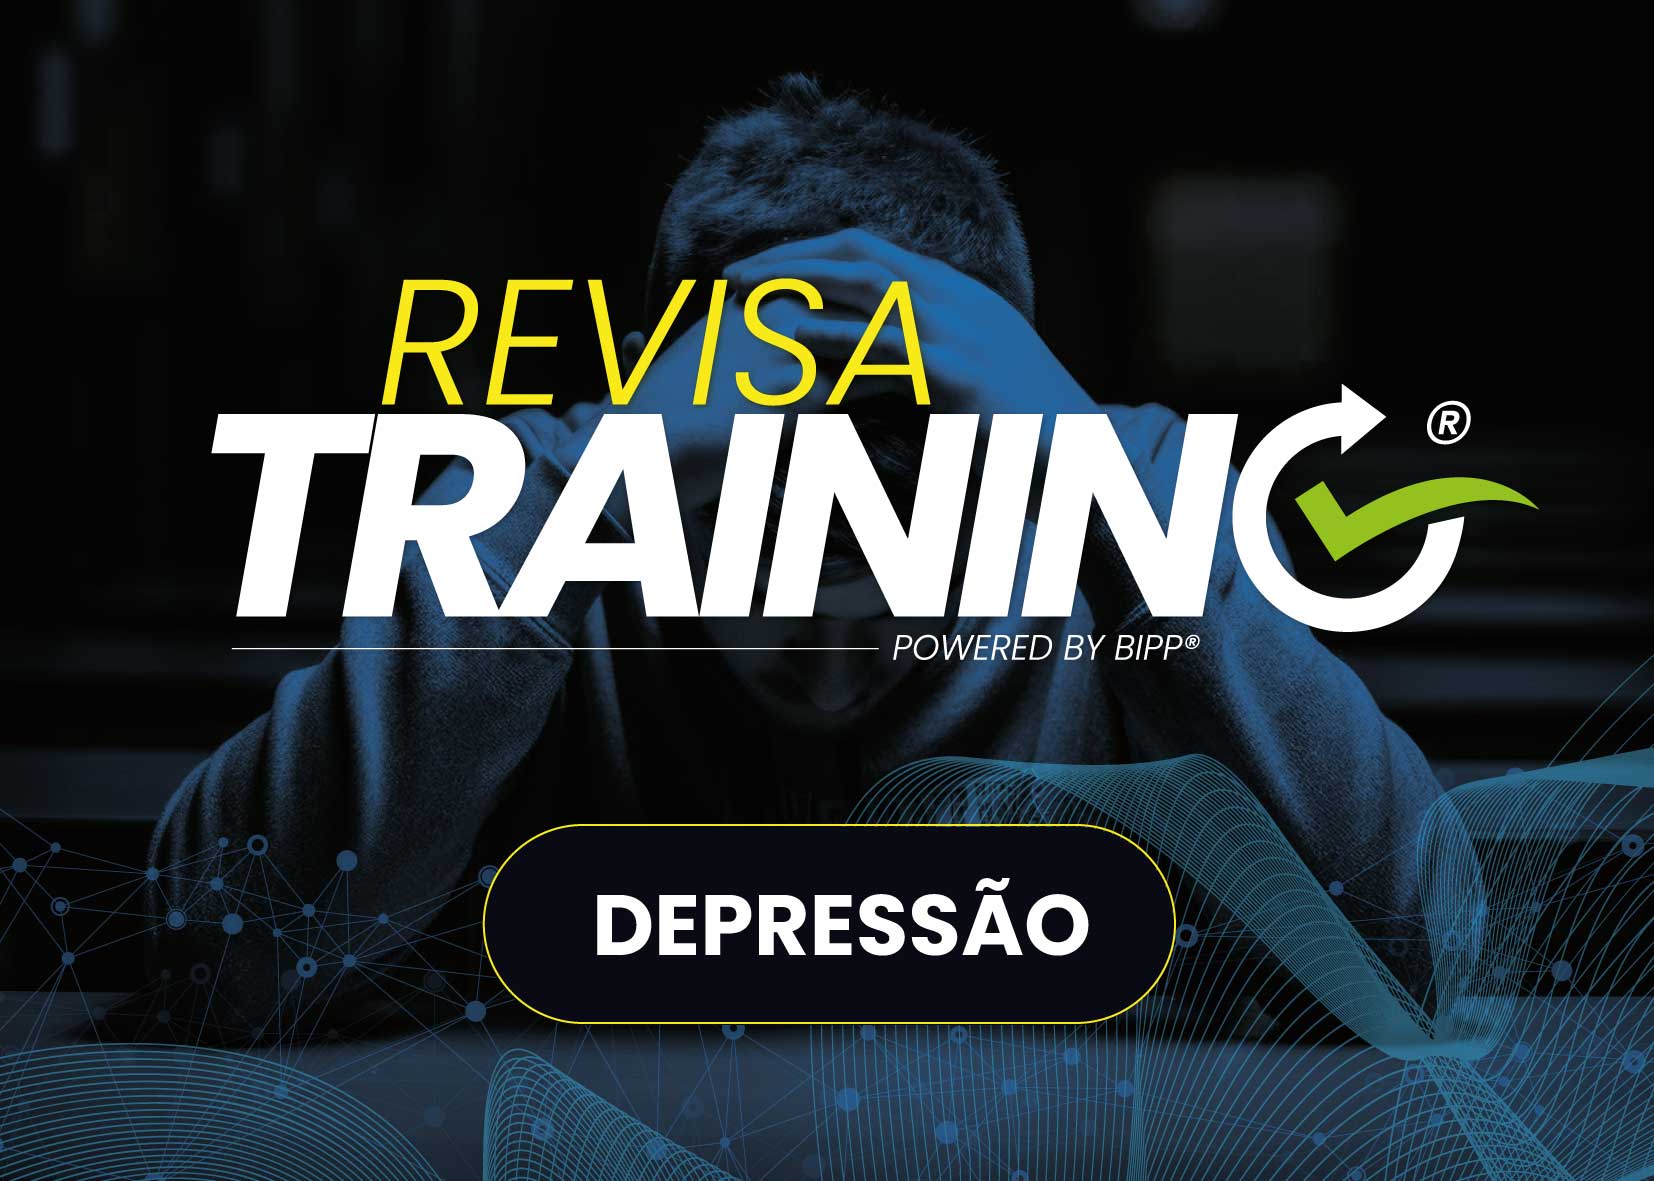 Revisa Training - Depresso